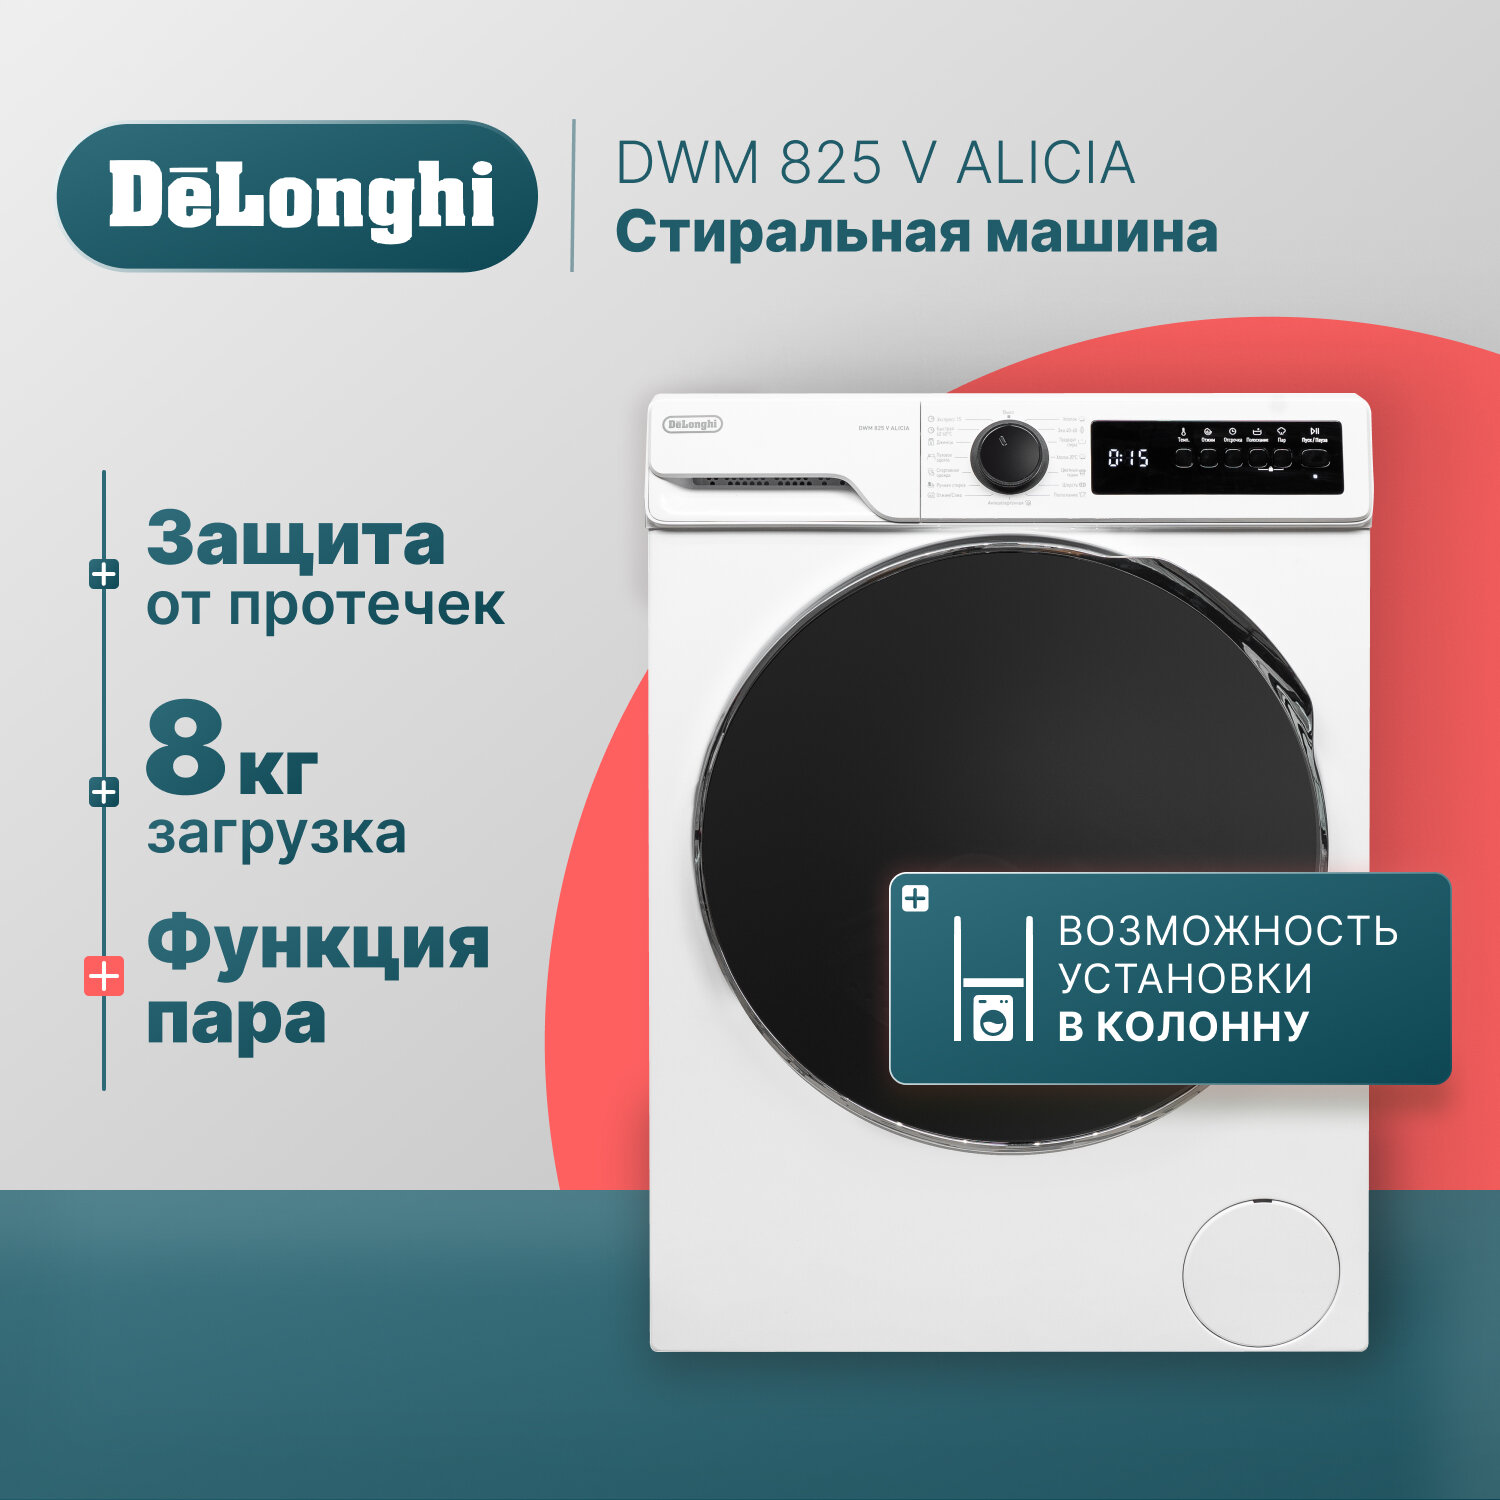 Стиральная машина DeLonghi DWM 825 V ALICIA 56 см 8 кг отсрочка старта 15 программ половинная загрузка Eco-Logic с функцией пара